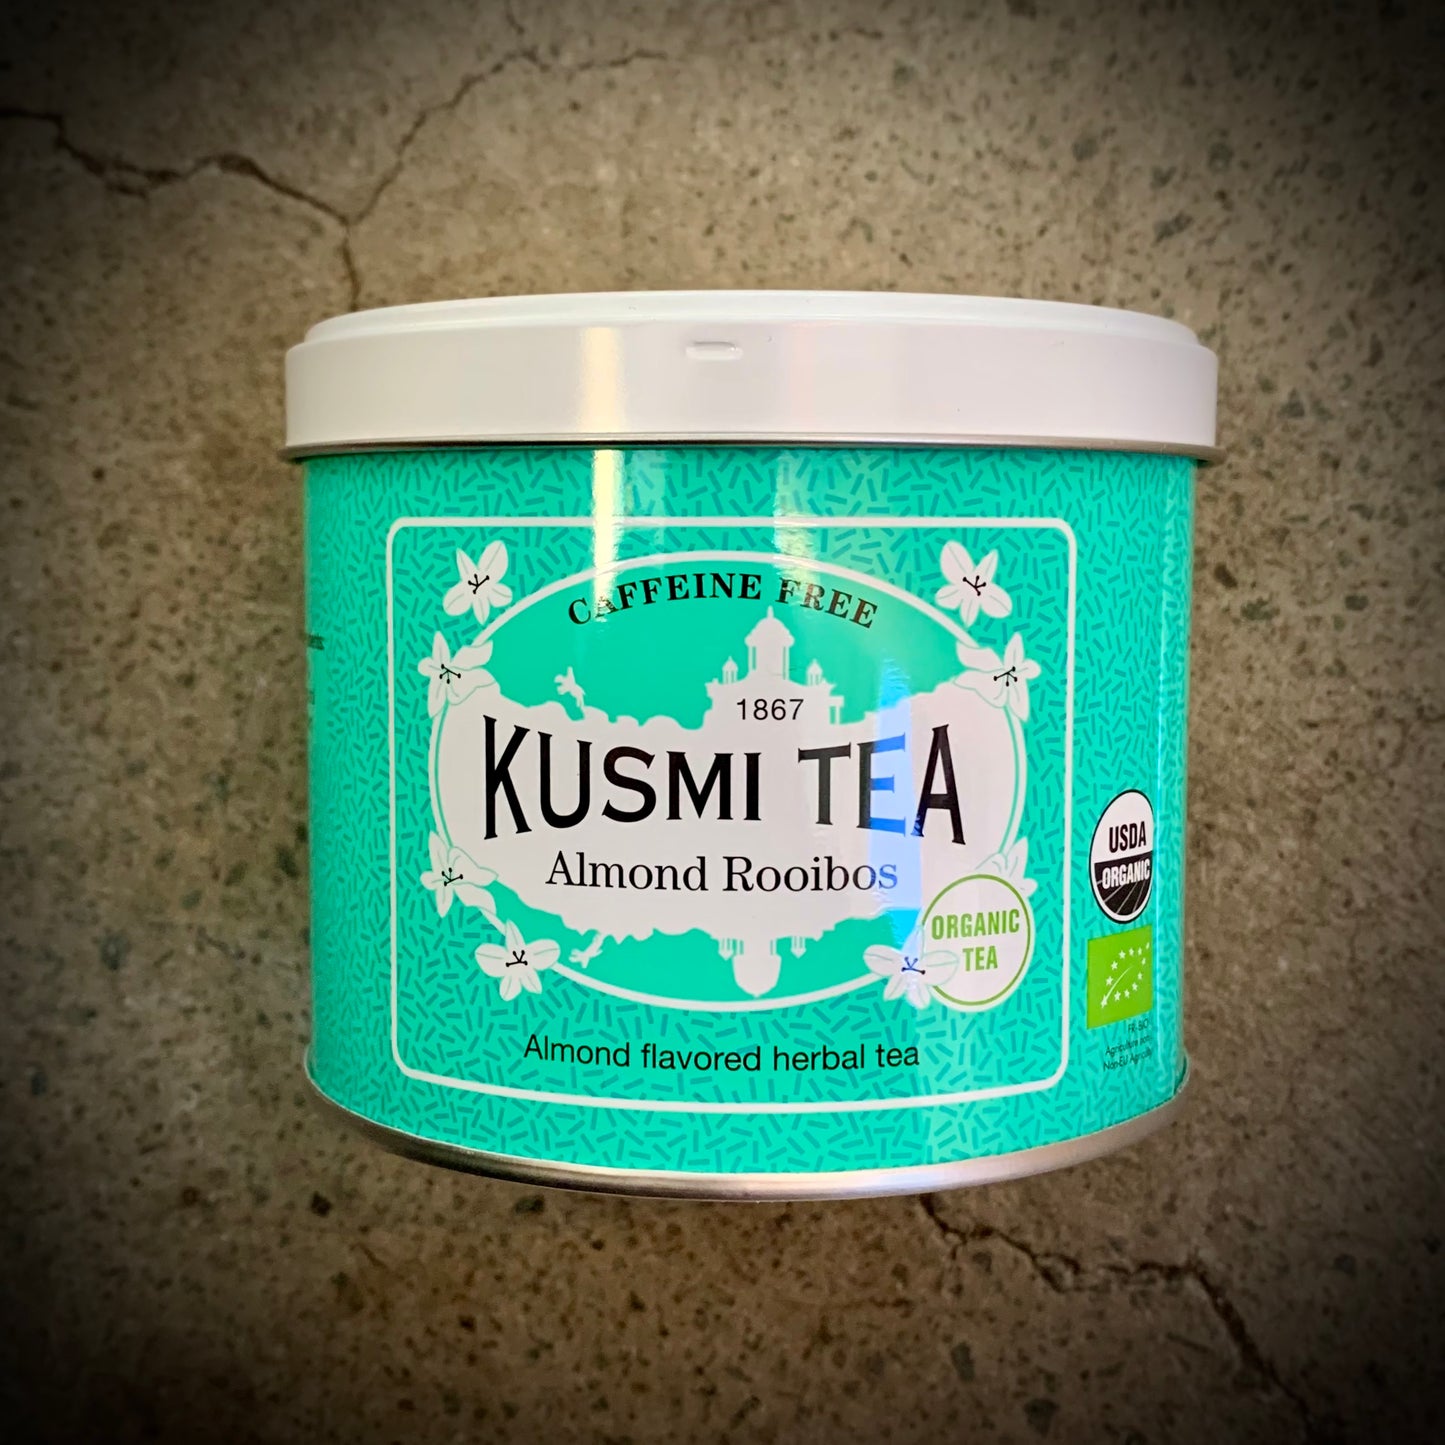 Kusmi, Almond Rooibos, Organic tea - 100g tin